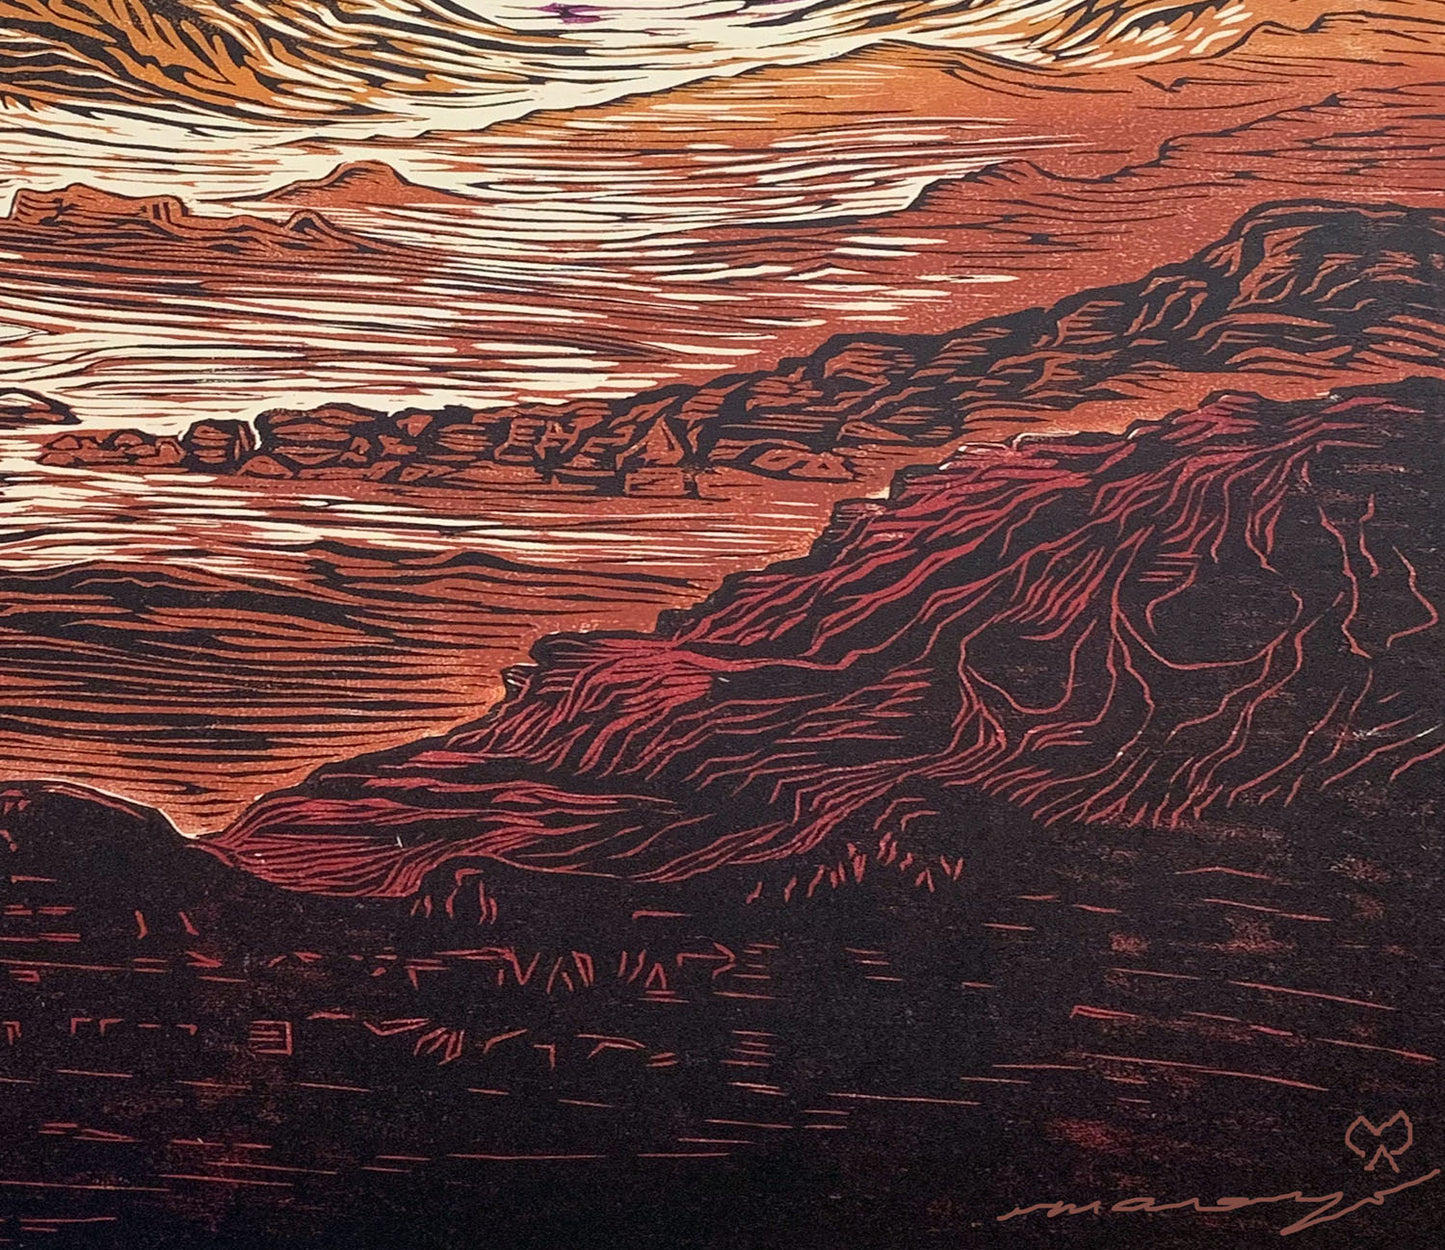 Fine Art Print Call of the Desert Bright Colors Desert Mountain Landscape